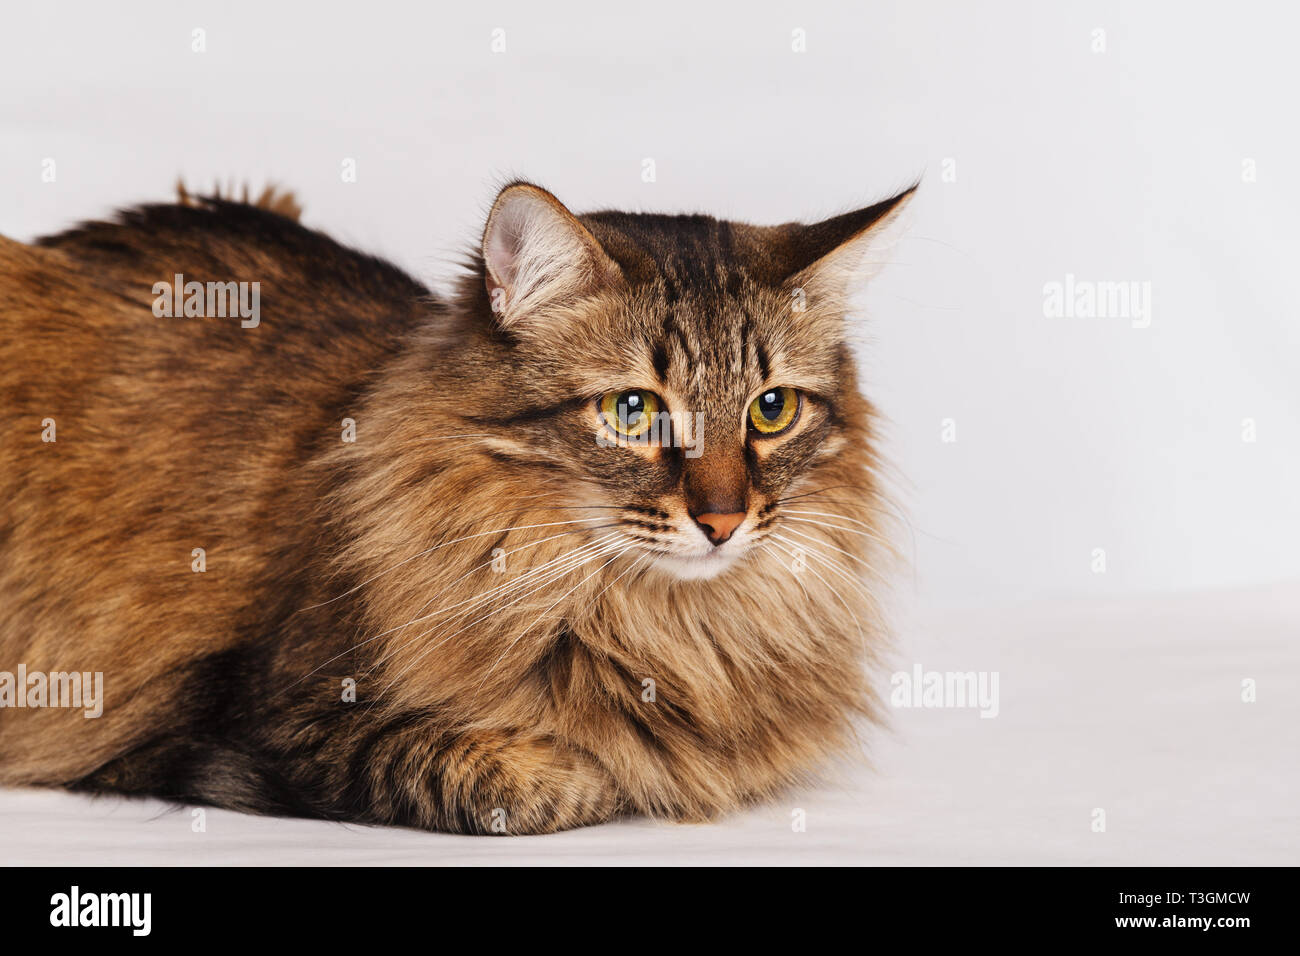 Grau tabby Furry süße Katze liegend auf einer hellen Wand Hintergrund, close-up. Gestreifte flauschige Katze mit einem langen Schnurrbart portrait. Stockfoto